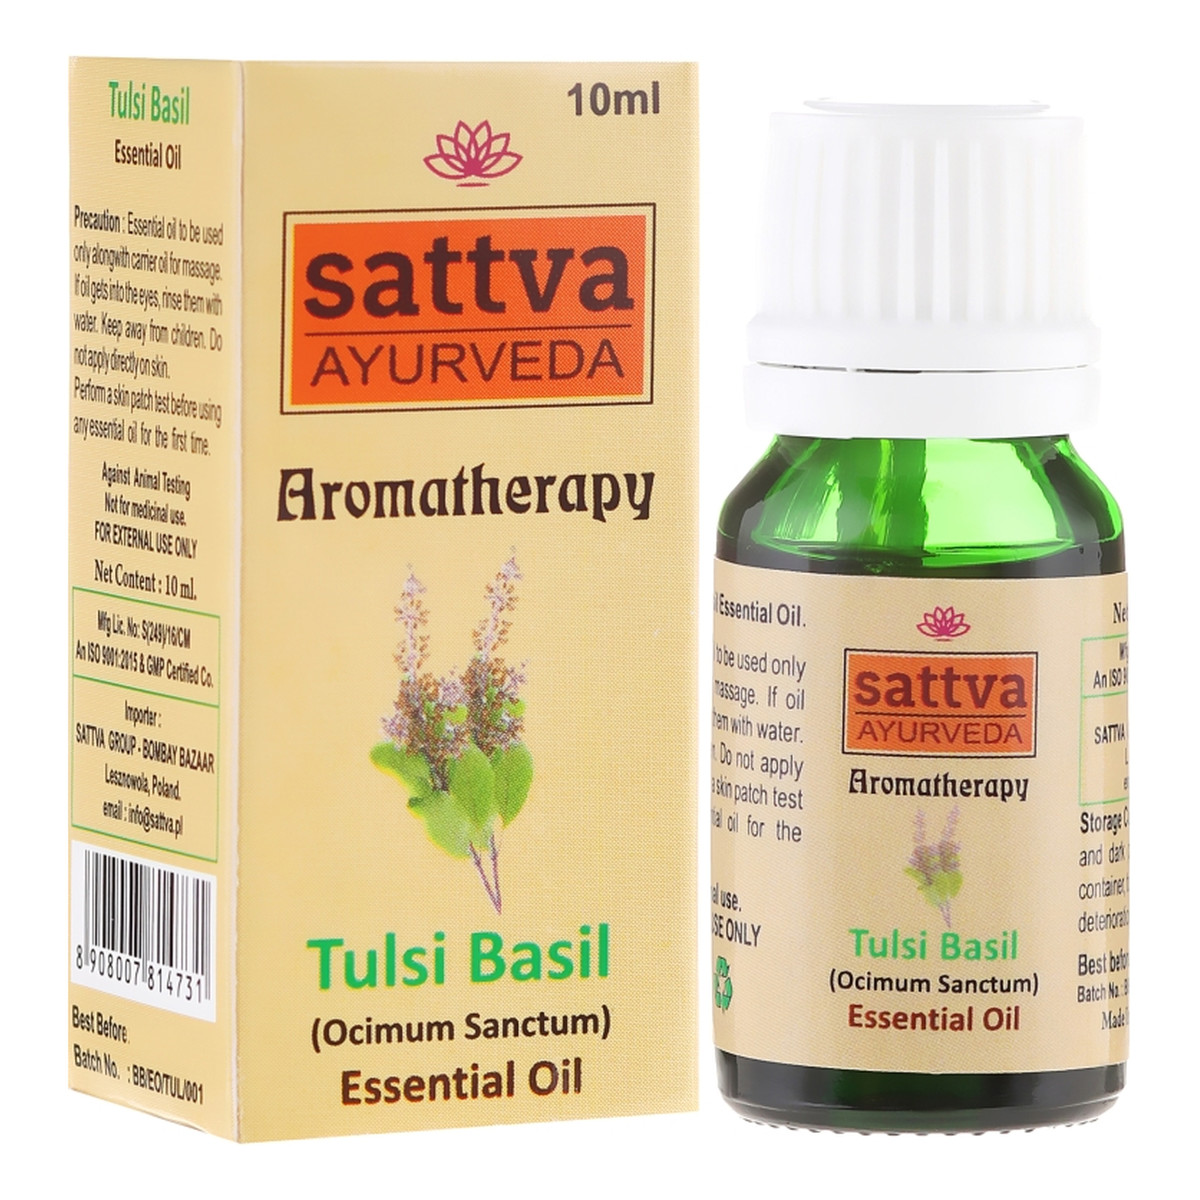 Sattva Aromatherapy Essential Oil Aromatherapy Naturalny olejek eteryczny z liści tulsi 10ml